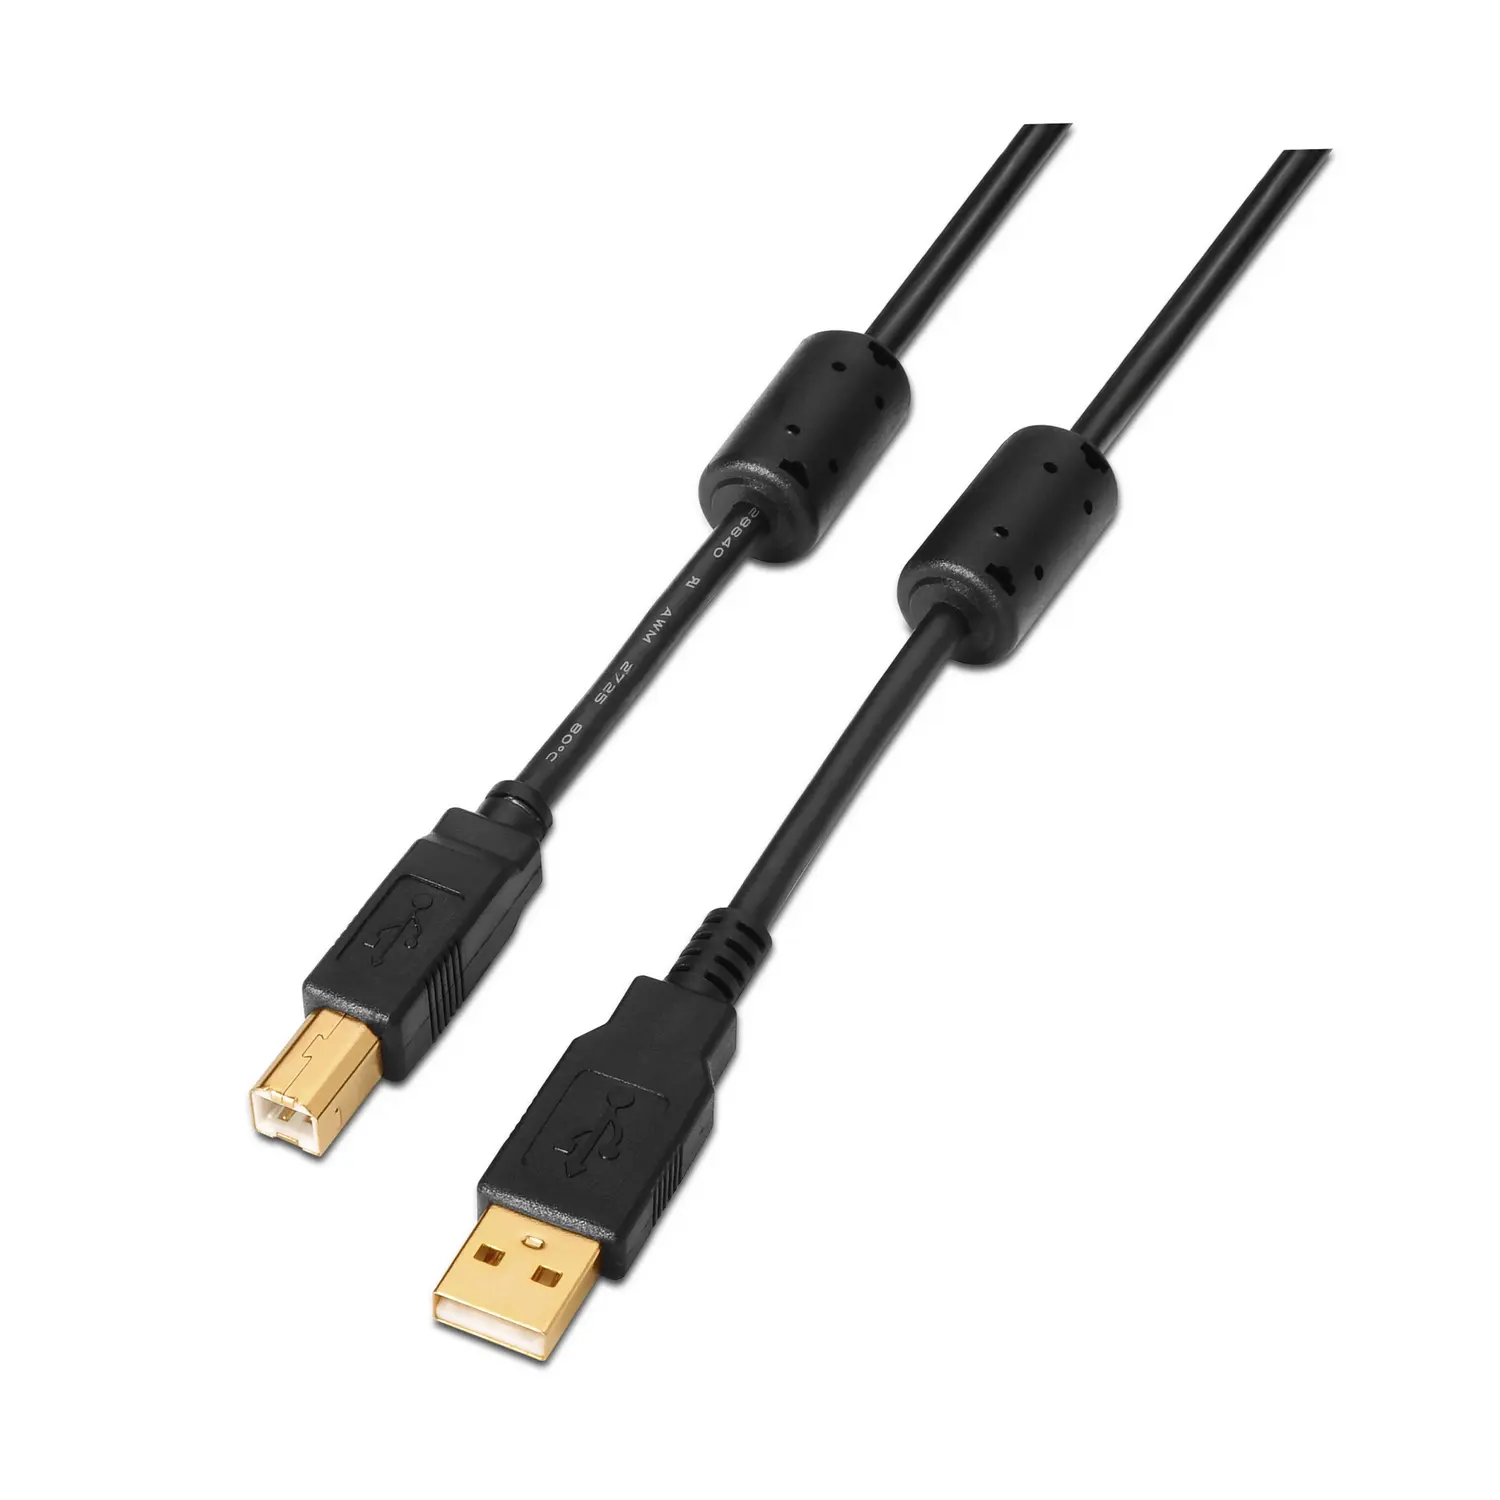 Aisens Cable USB 2.0 Impresora Super Alta Calidad con Ferrita - Tipo A Macho a Tipo B Macho - 5.0m -